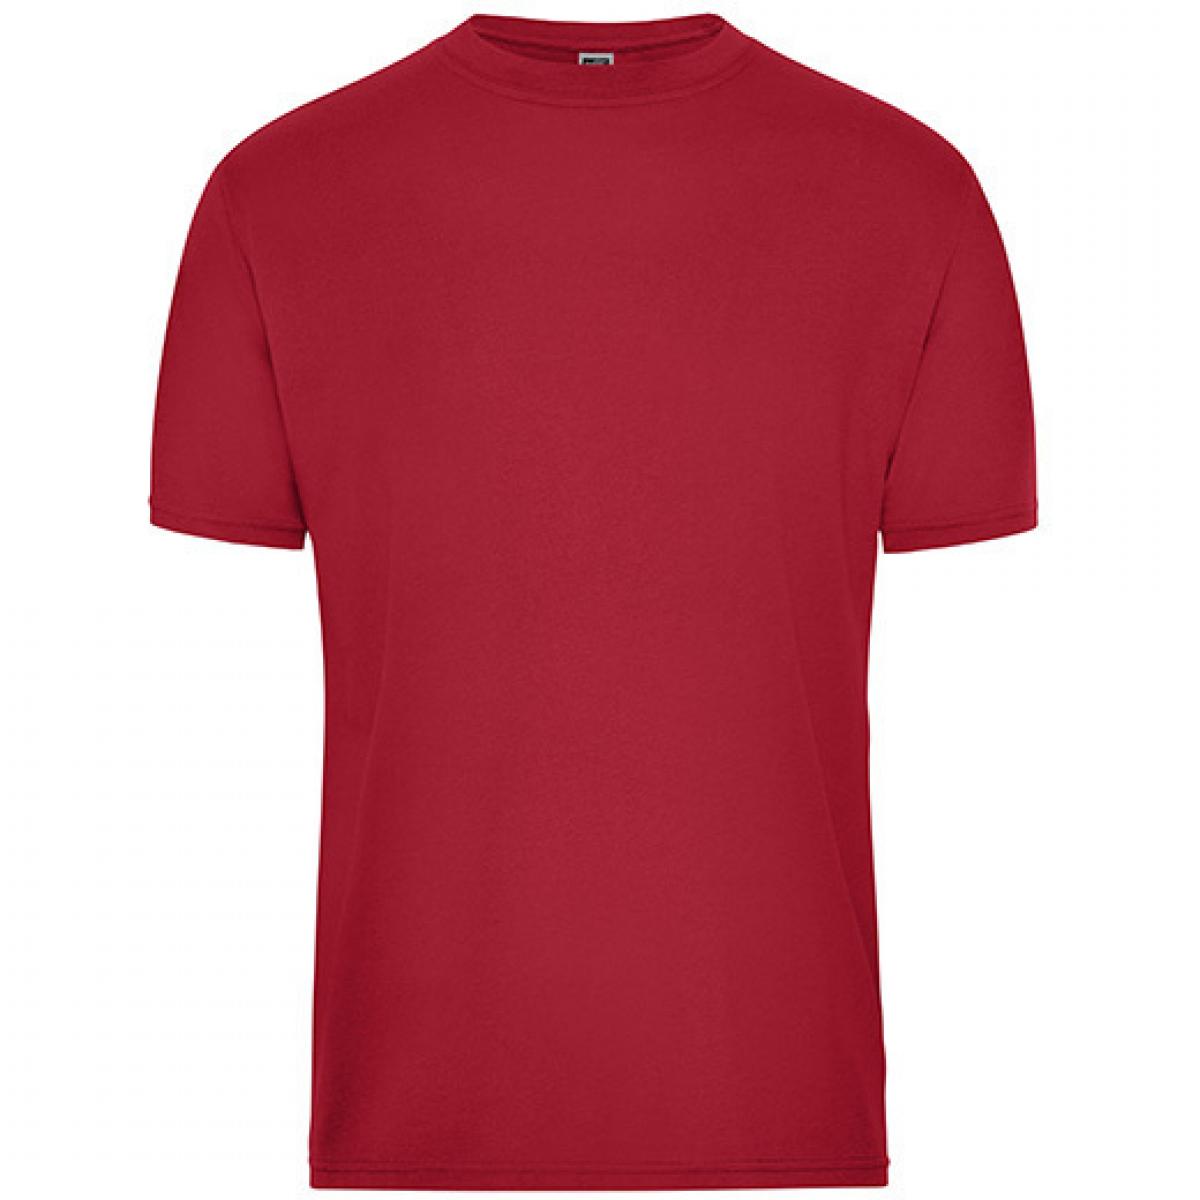 Hersteller: James+Nicholson Herstellernummer: JN1808 Artikelbezeichnung: Men‘s BIO Workwear T-Shirt, Waschbar bis 60 °C Farbe: Red